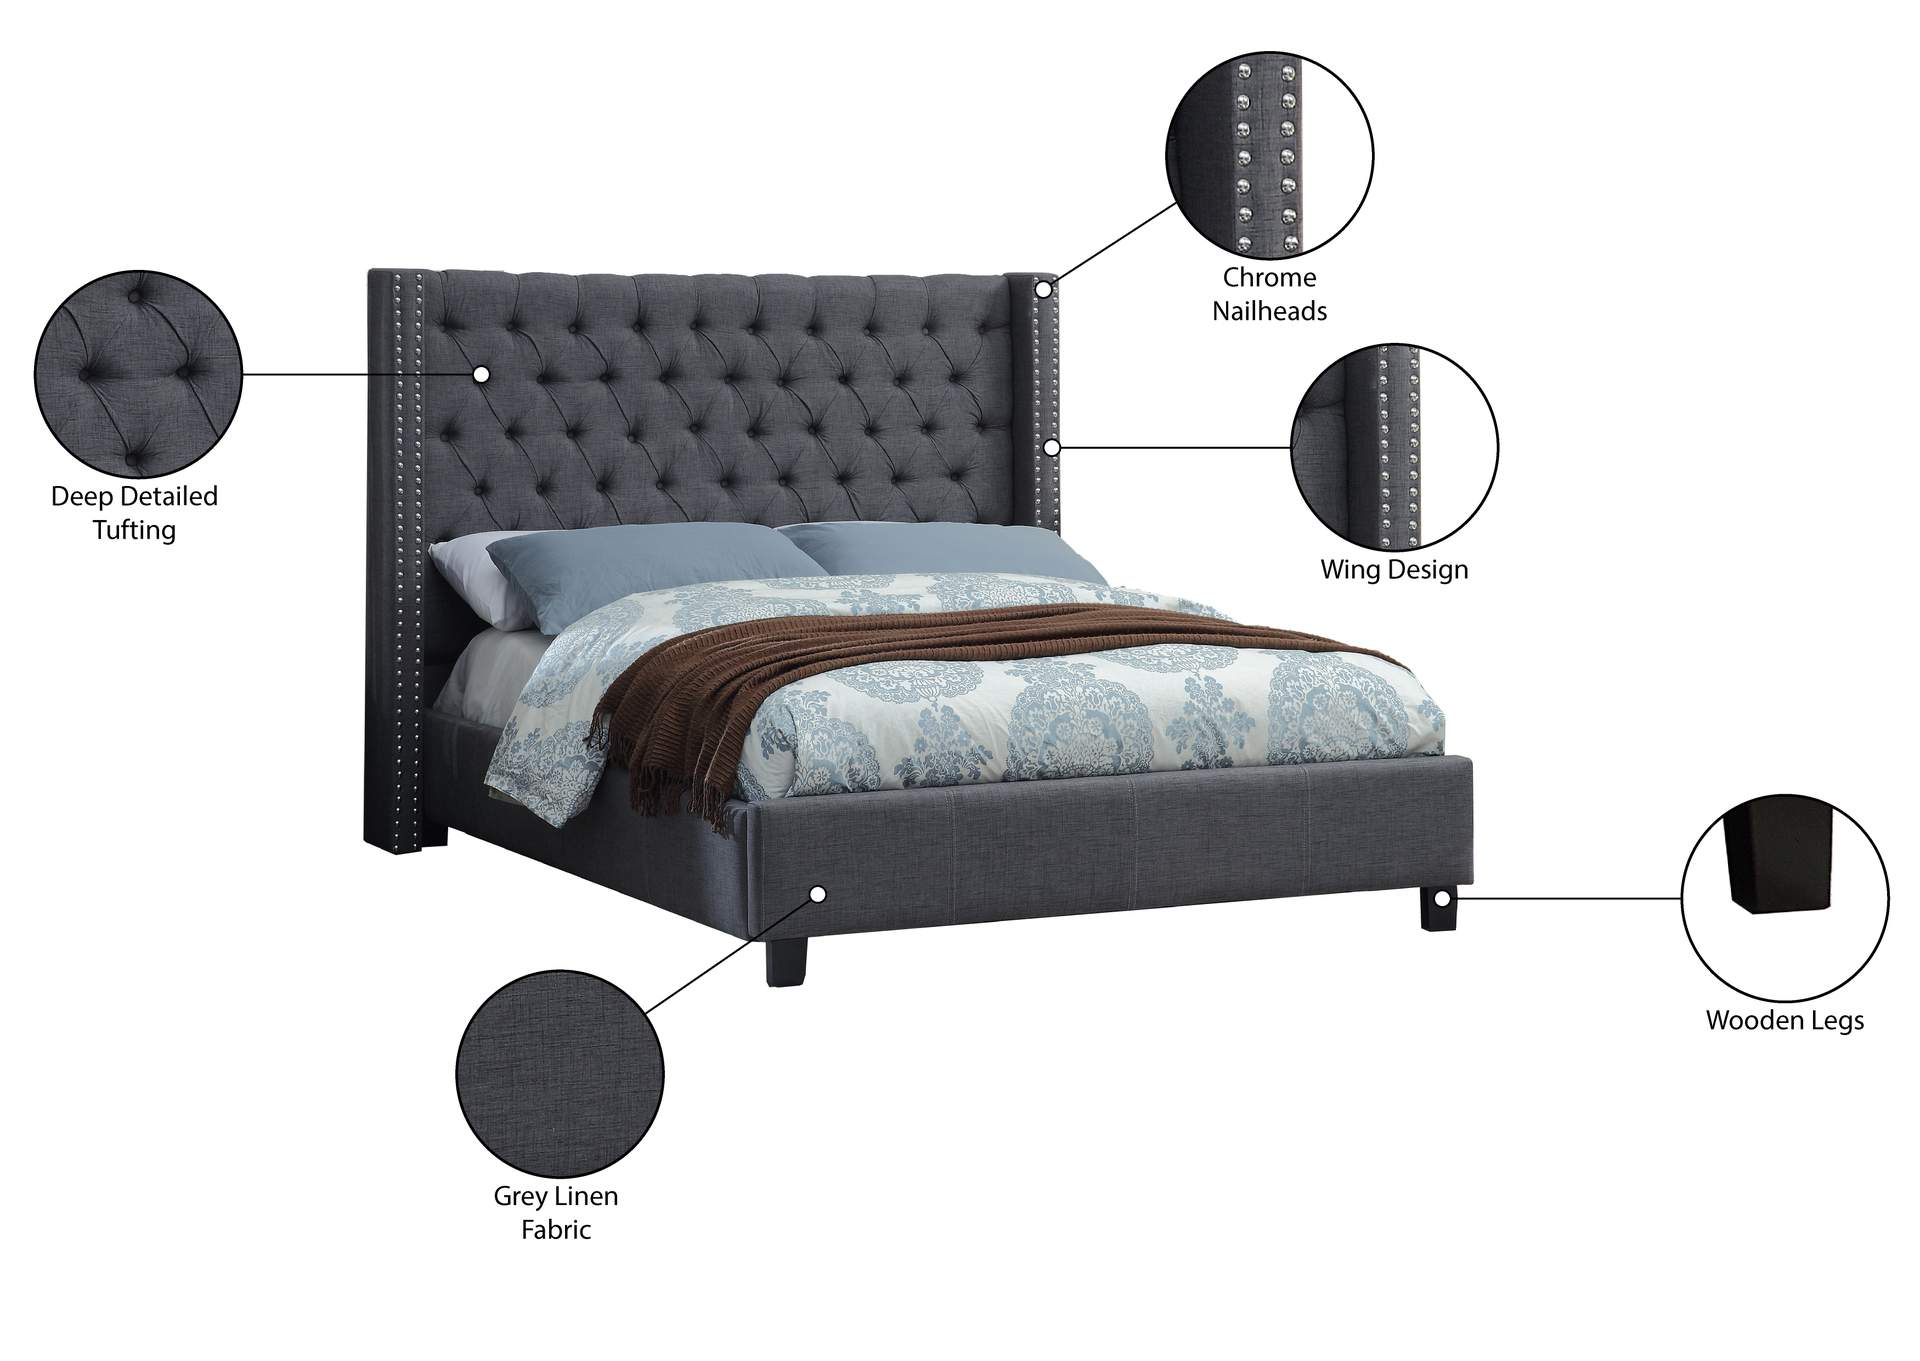 Ashton Grey Linen Textured Queen Bed,Meridian Furniture